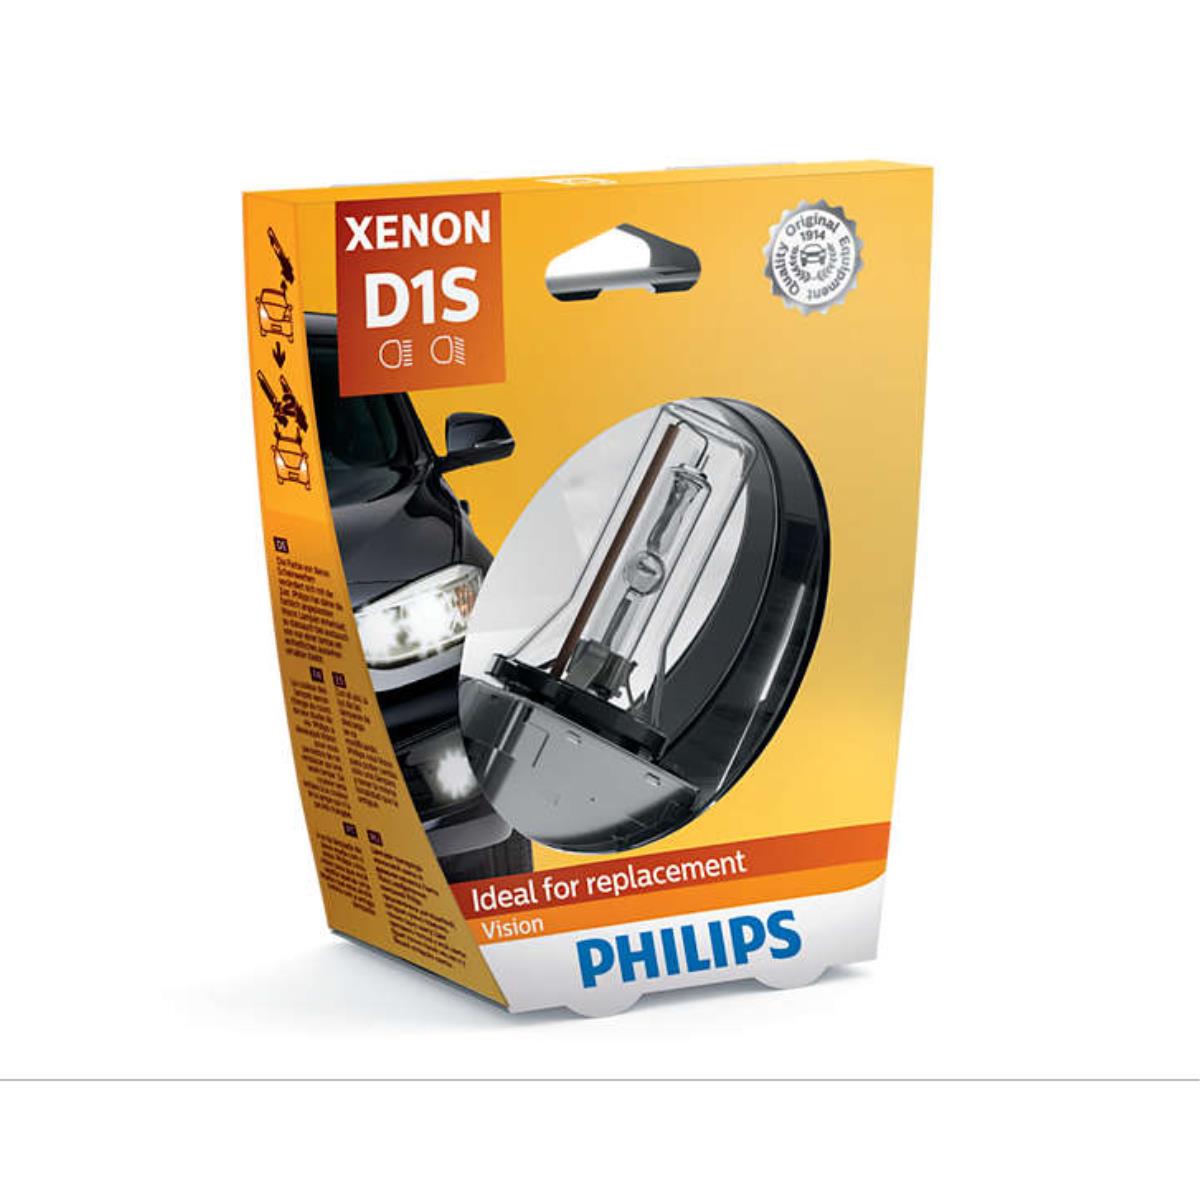 Xenonbrenner Gasentladungslampe Philips Vision D1S 85V/35W PK32d-2 4600K